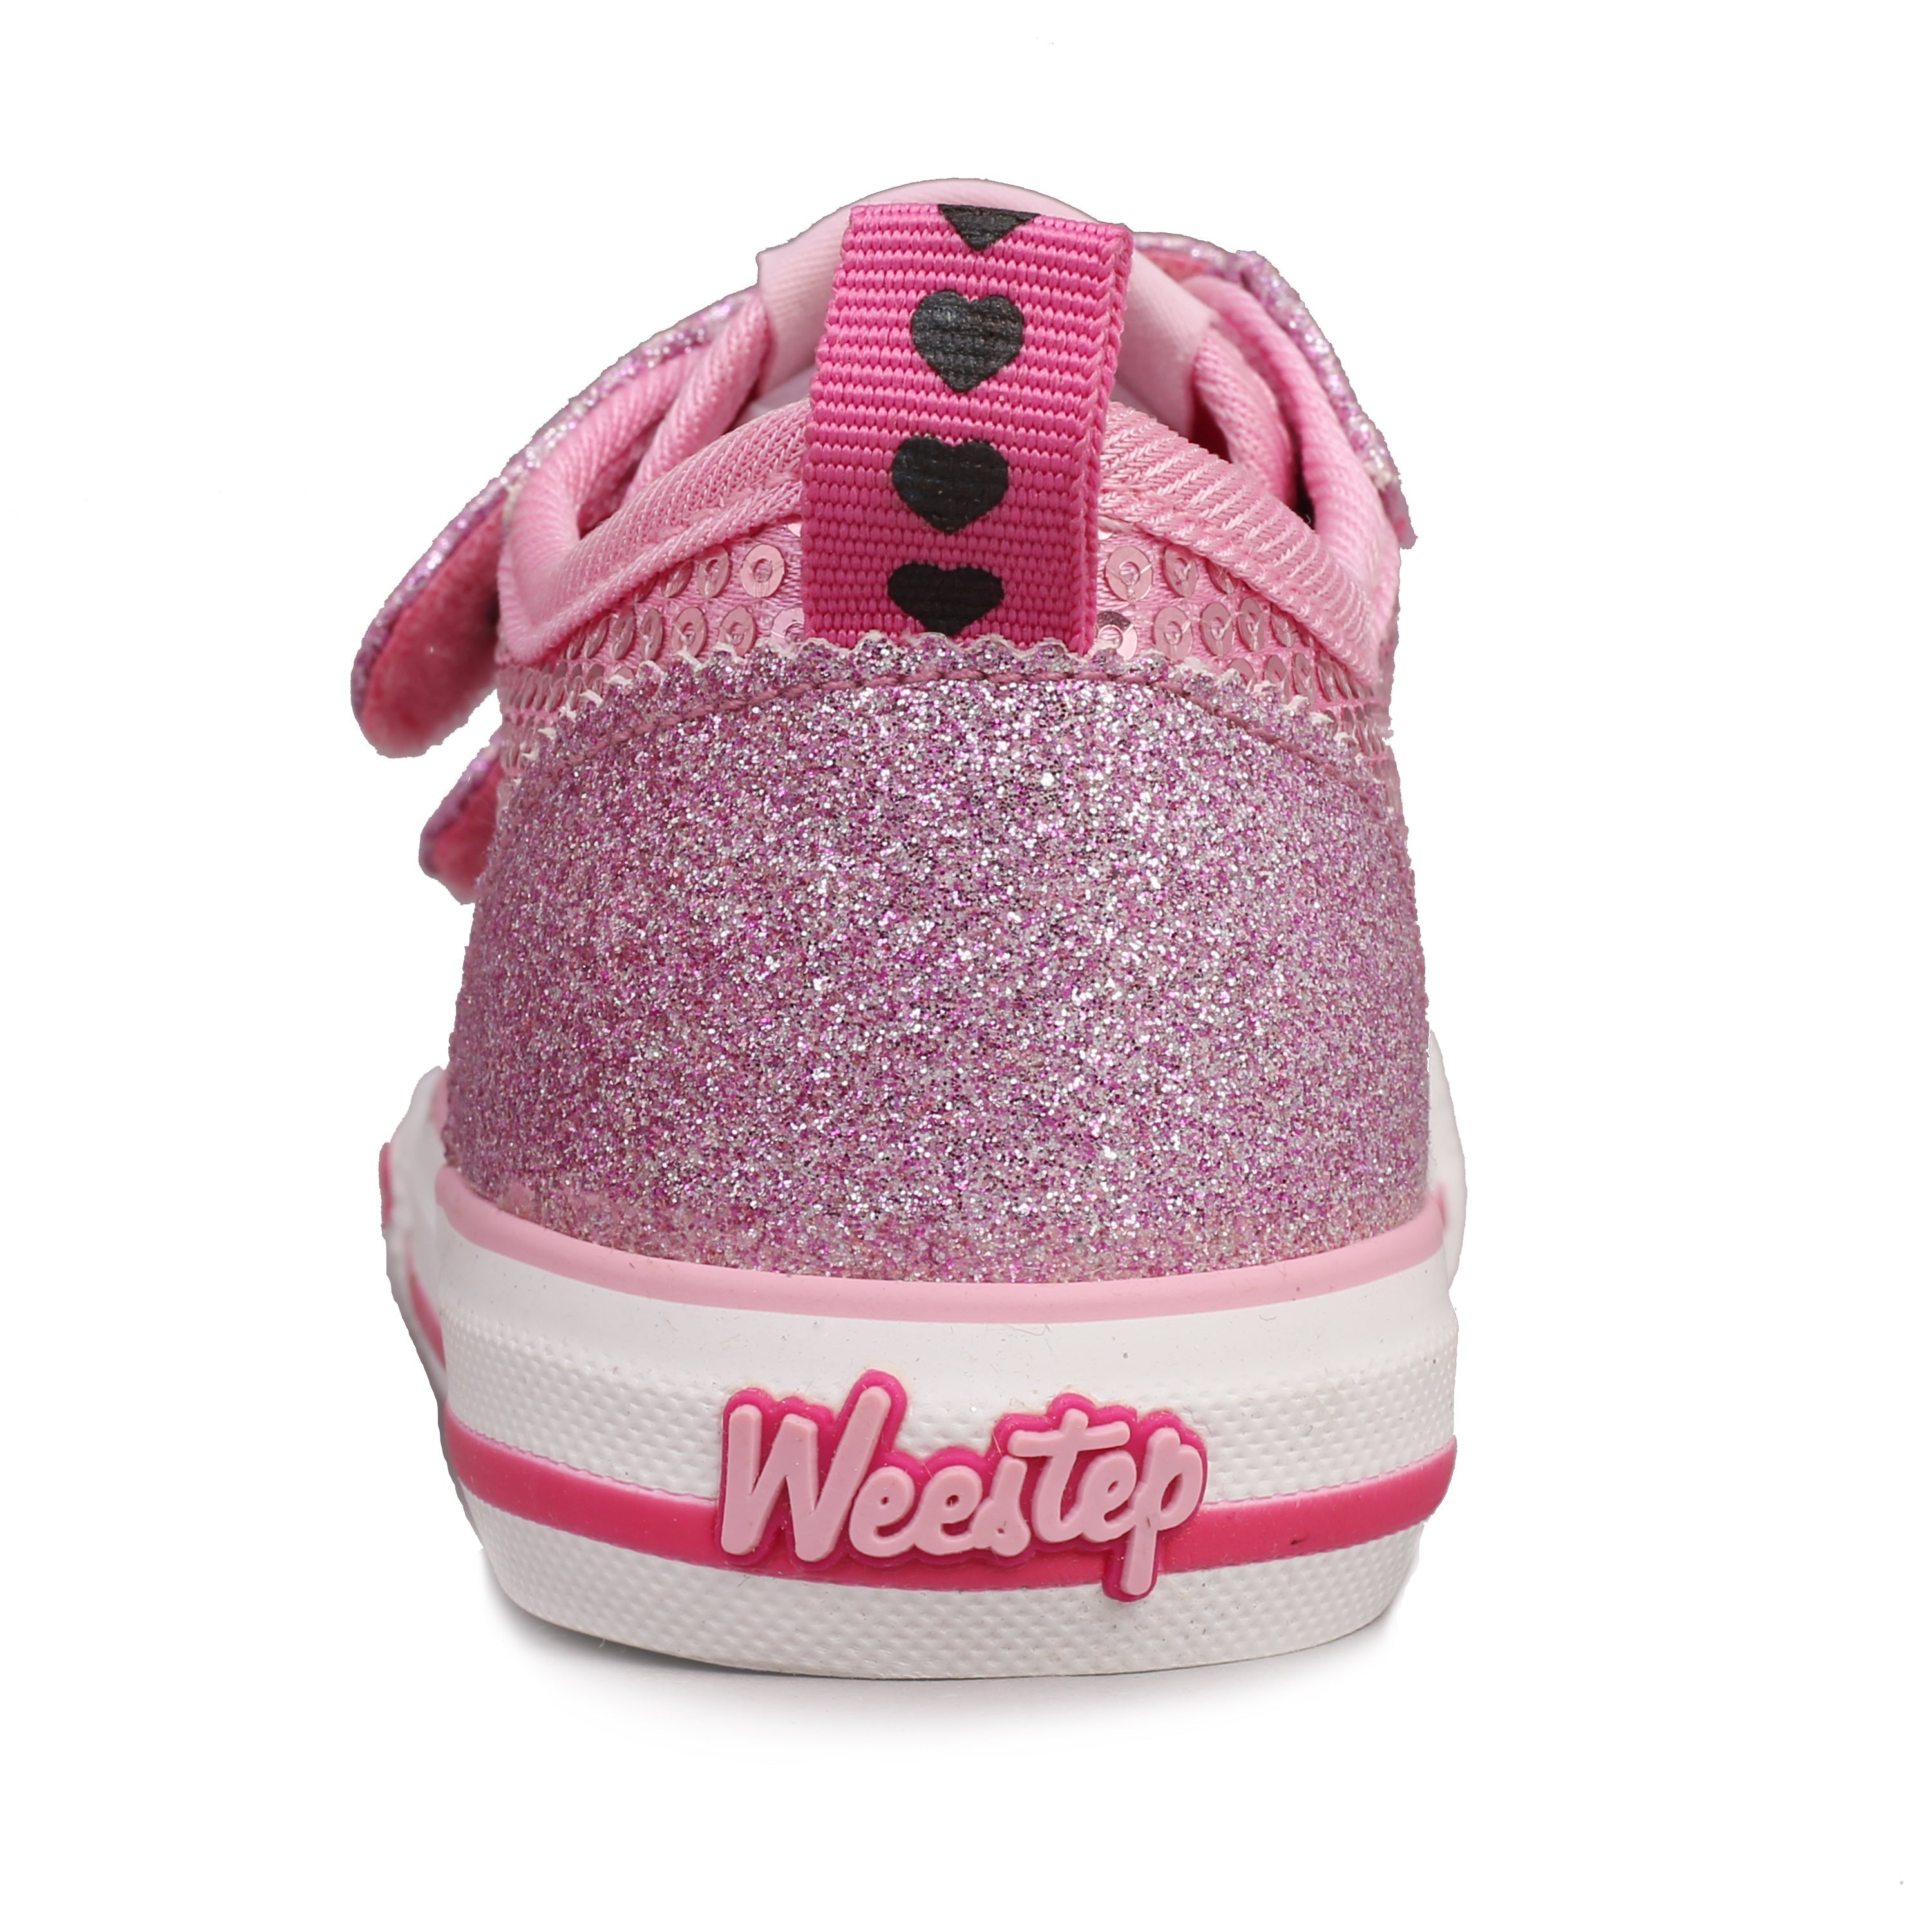 Toddler Little Kid Sequin Strap Sneaker